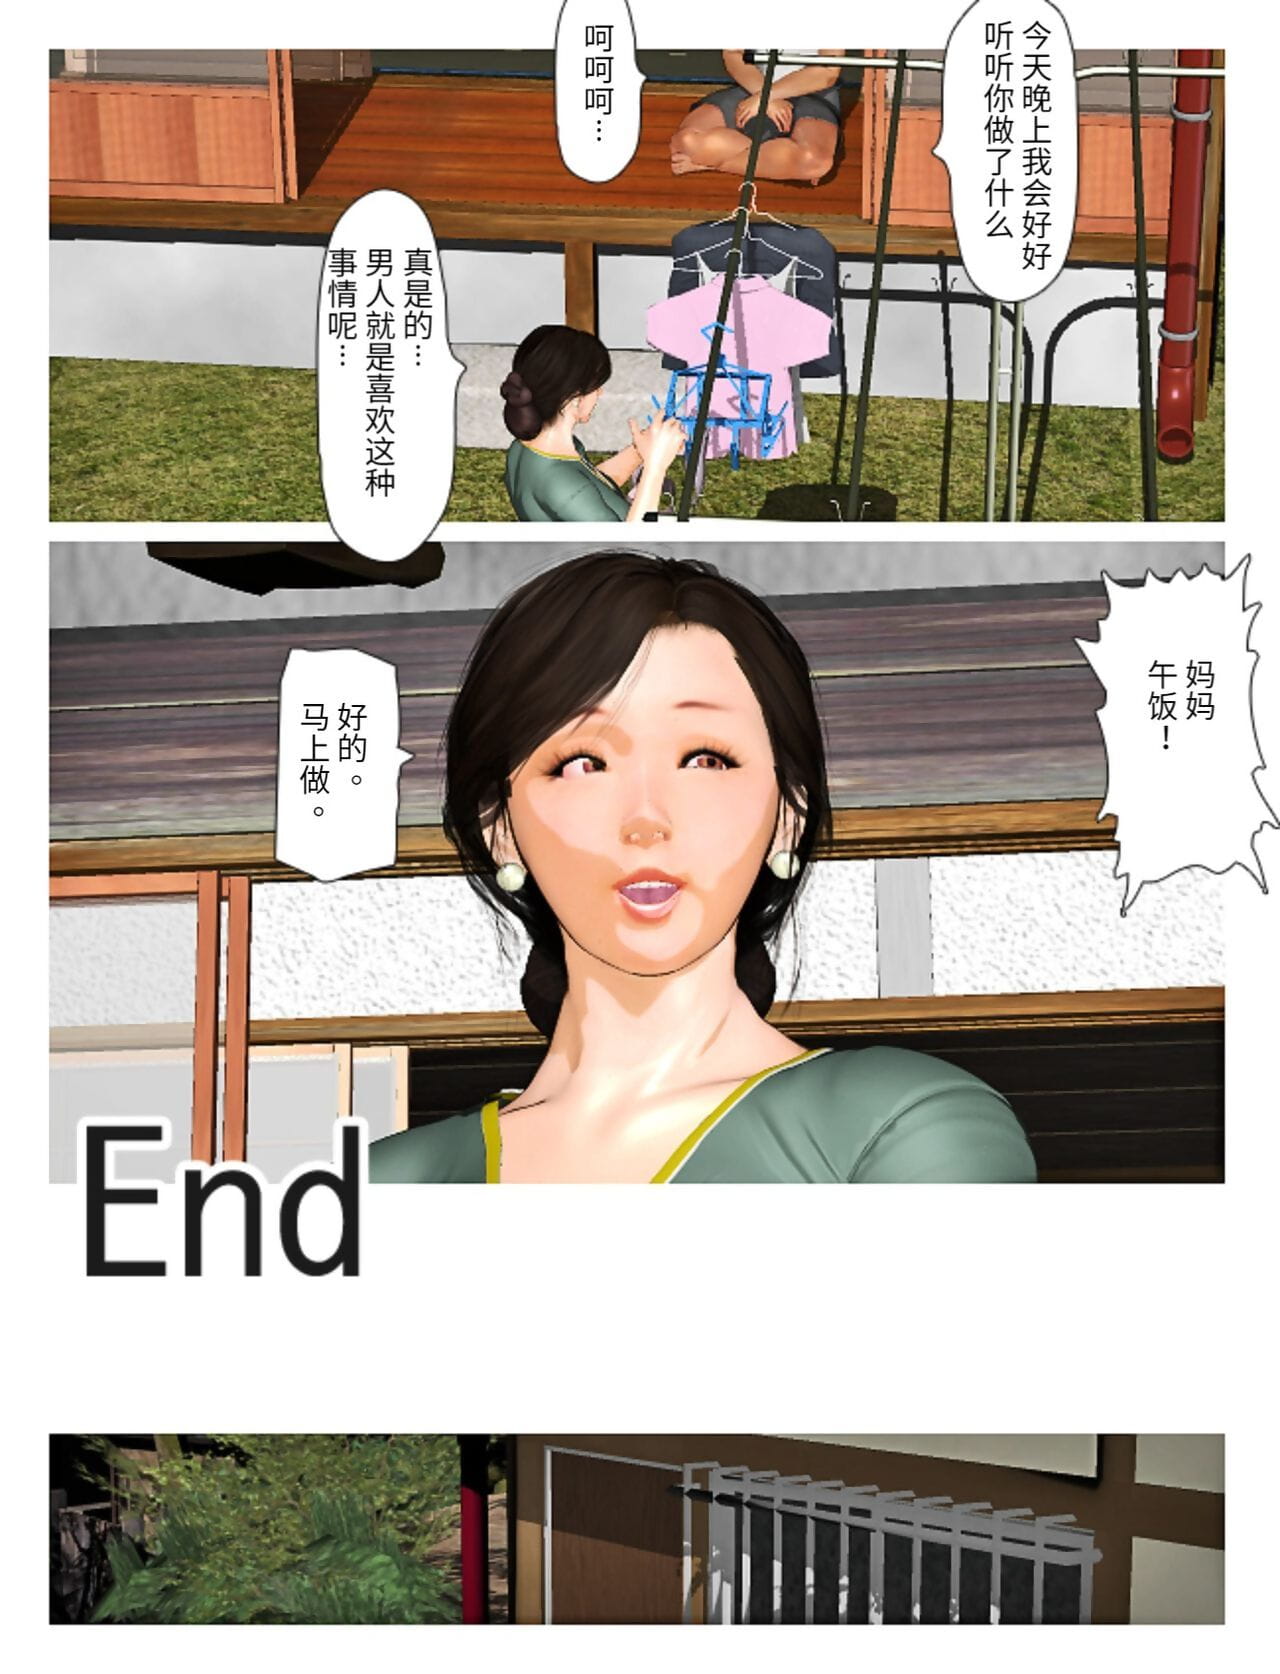 kyou geen misako san 2019:4 Onderdeel 5 page 1